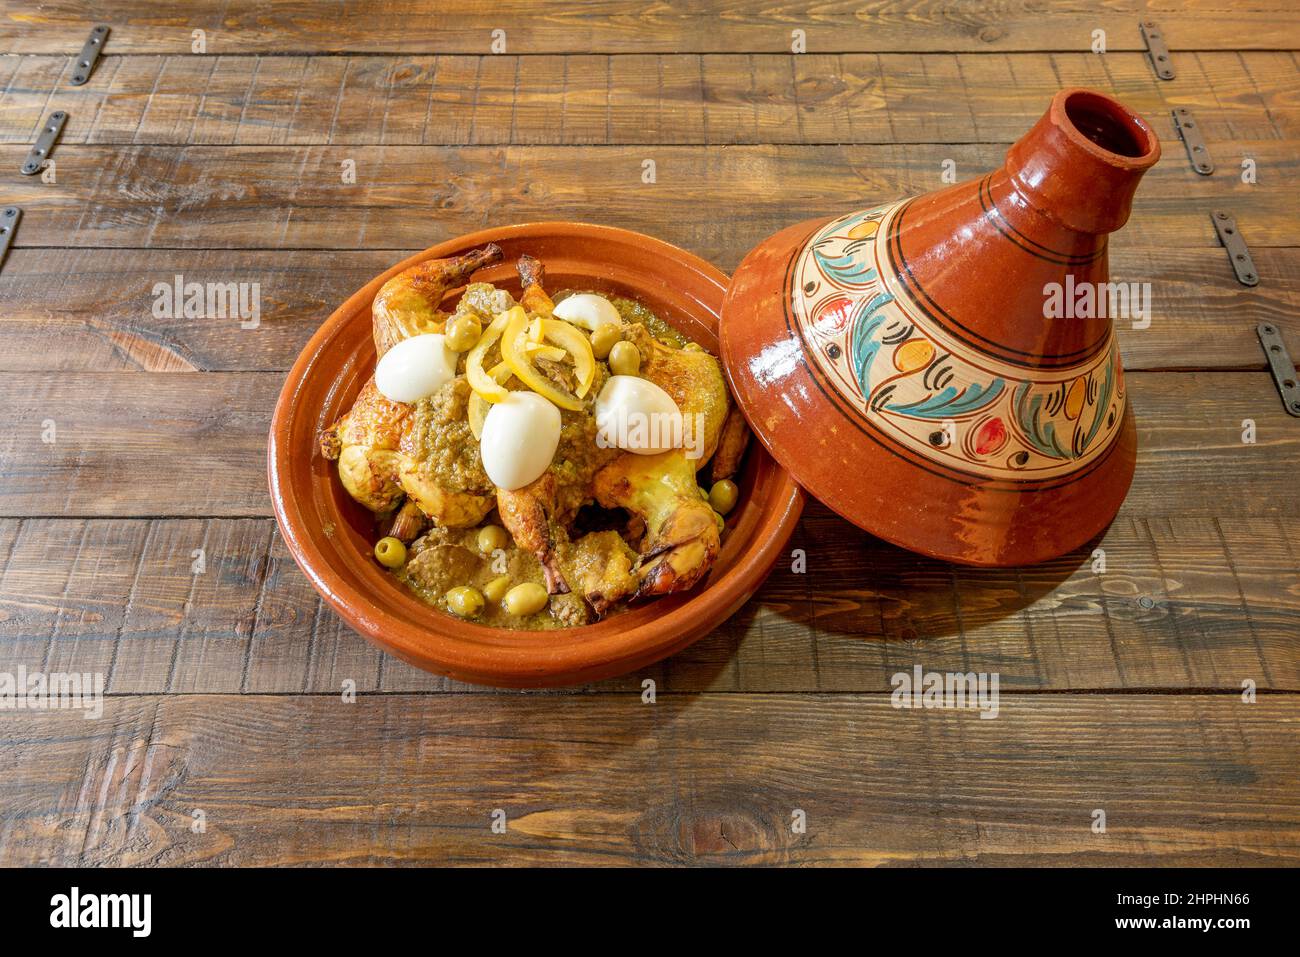 Au Maroc, ils cuisent toutes sortes de viande, de poisson et de légumes dans le tajine, bien que l'un des plus classiques soit le tajine de poulet au citron et à l'olive Banque D'Images